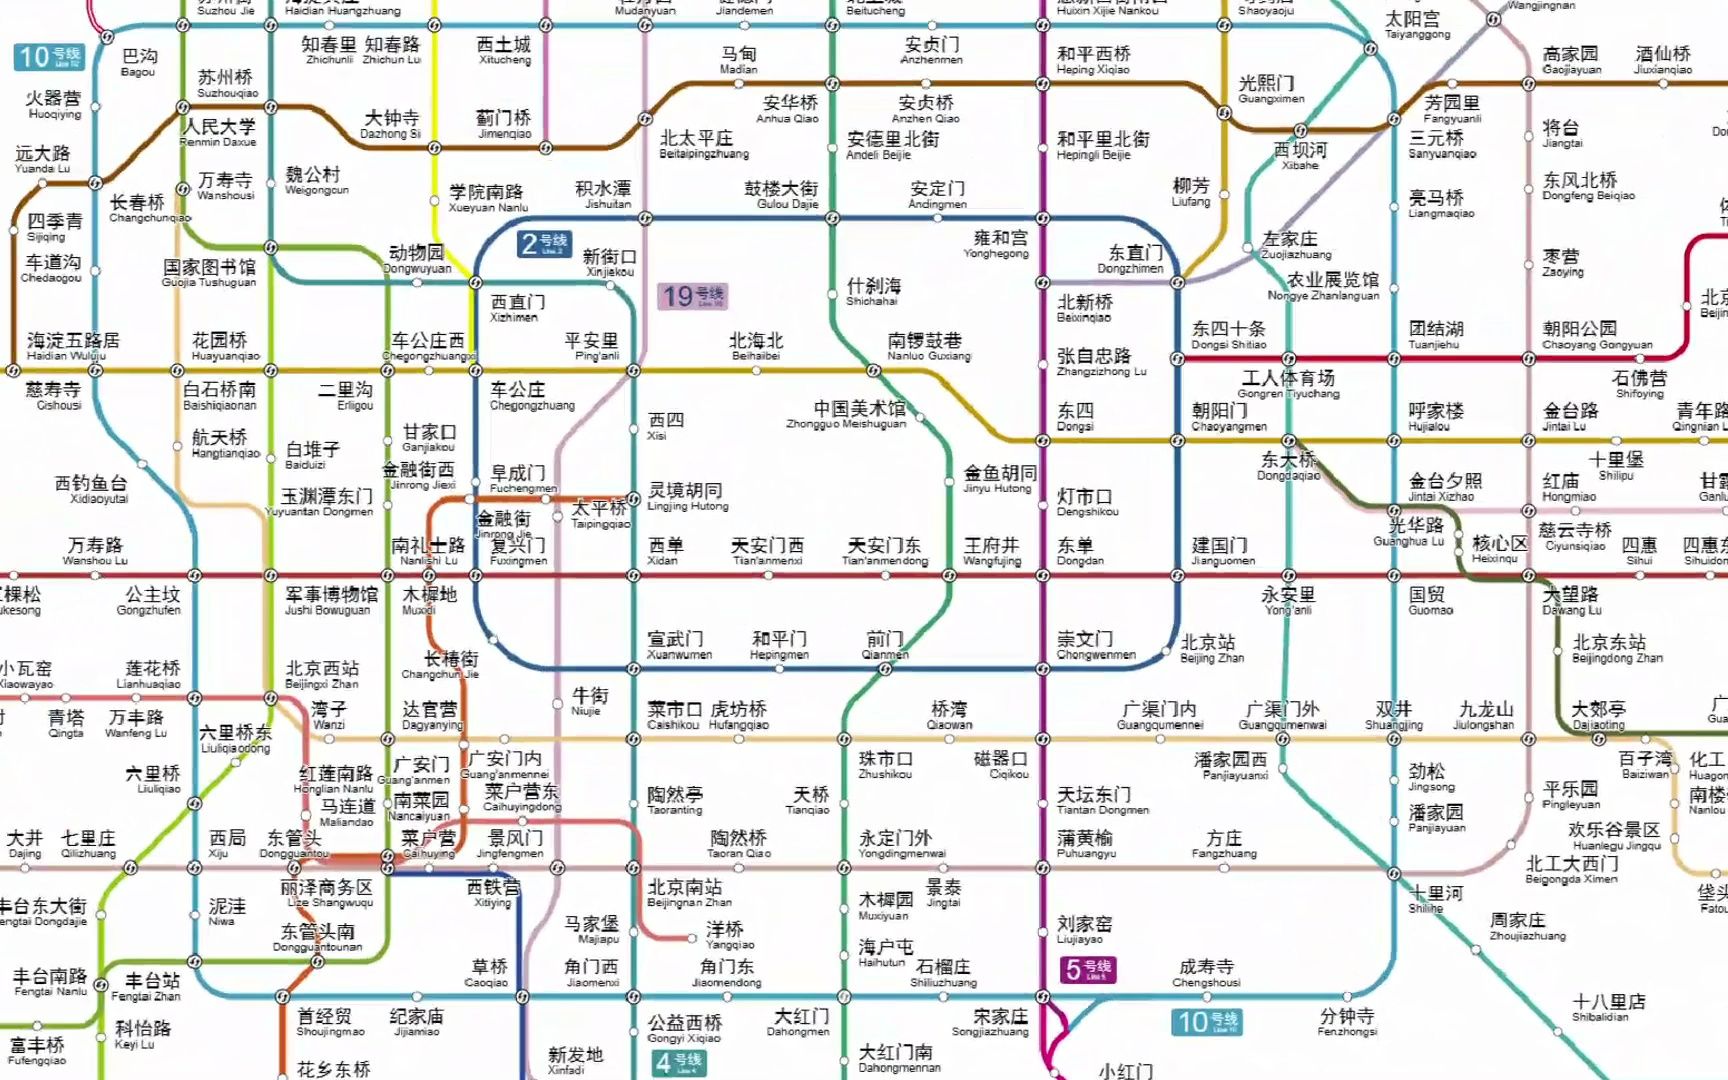 北京地铁图最新版高清图片